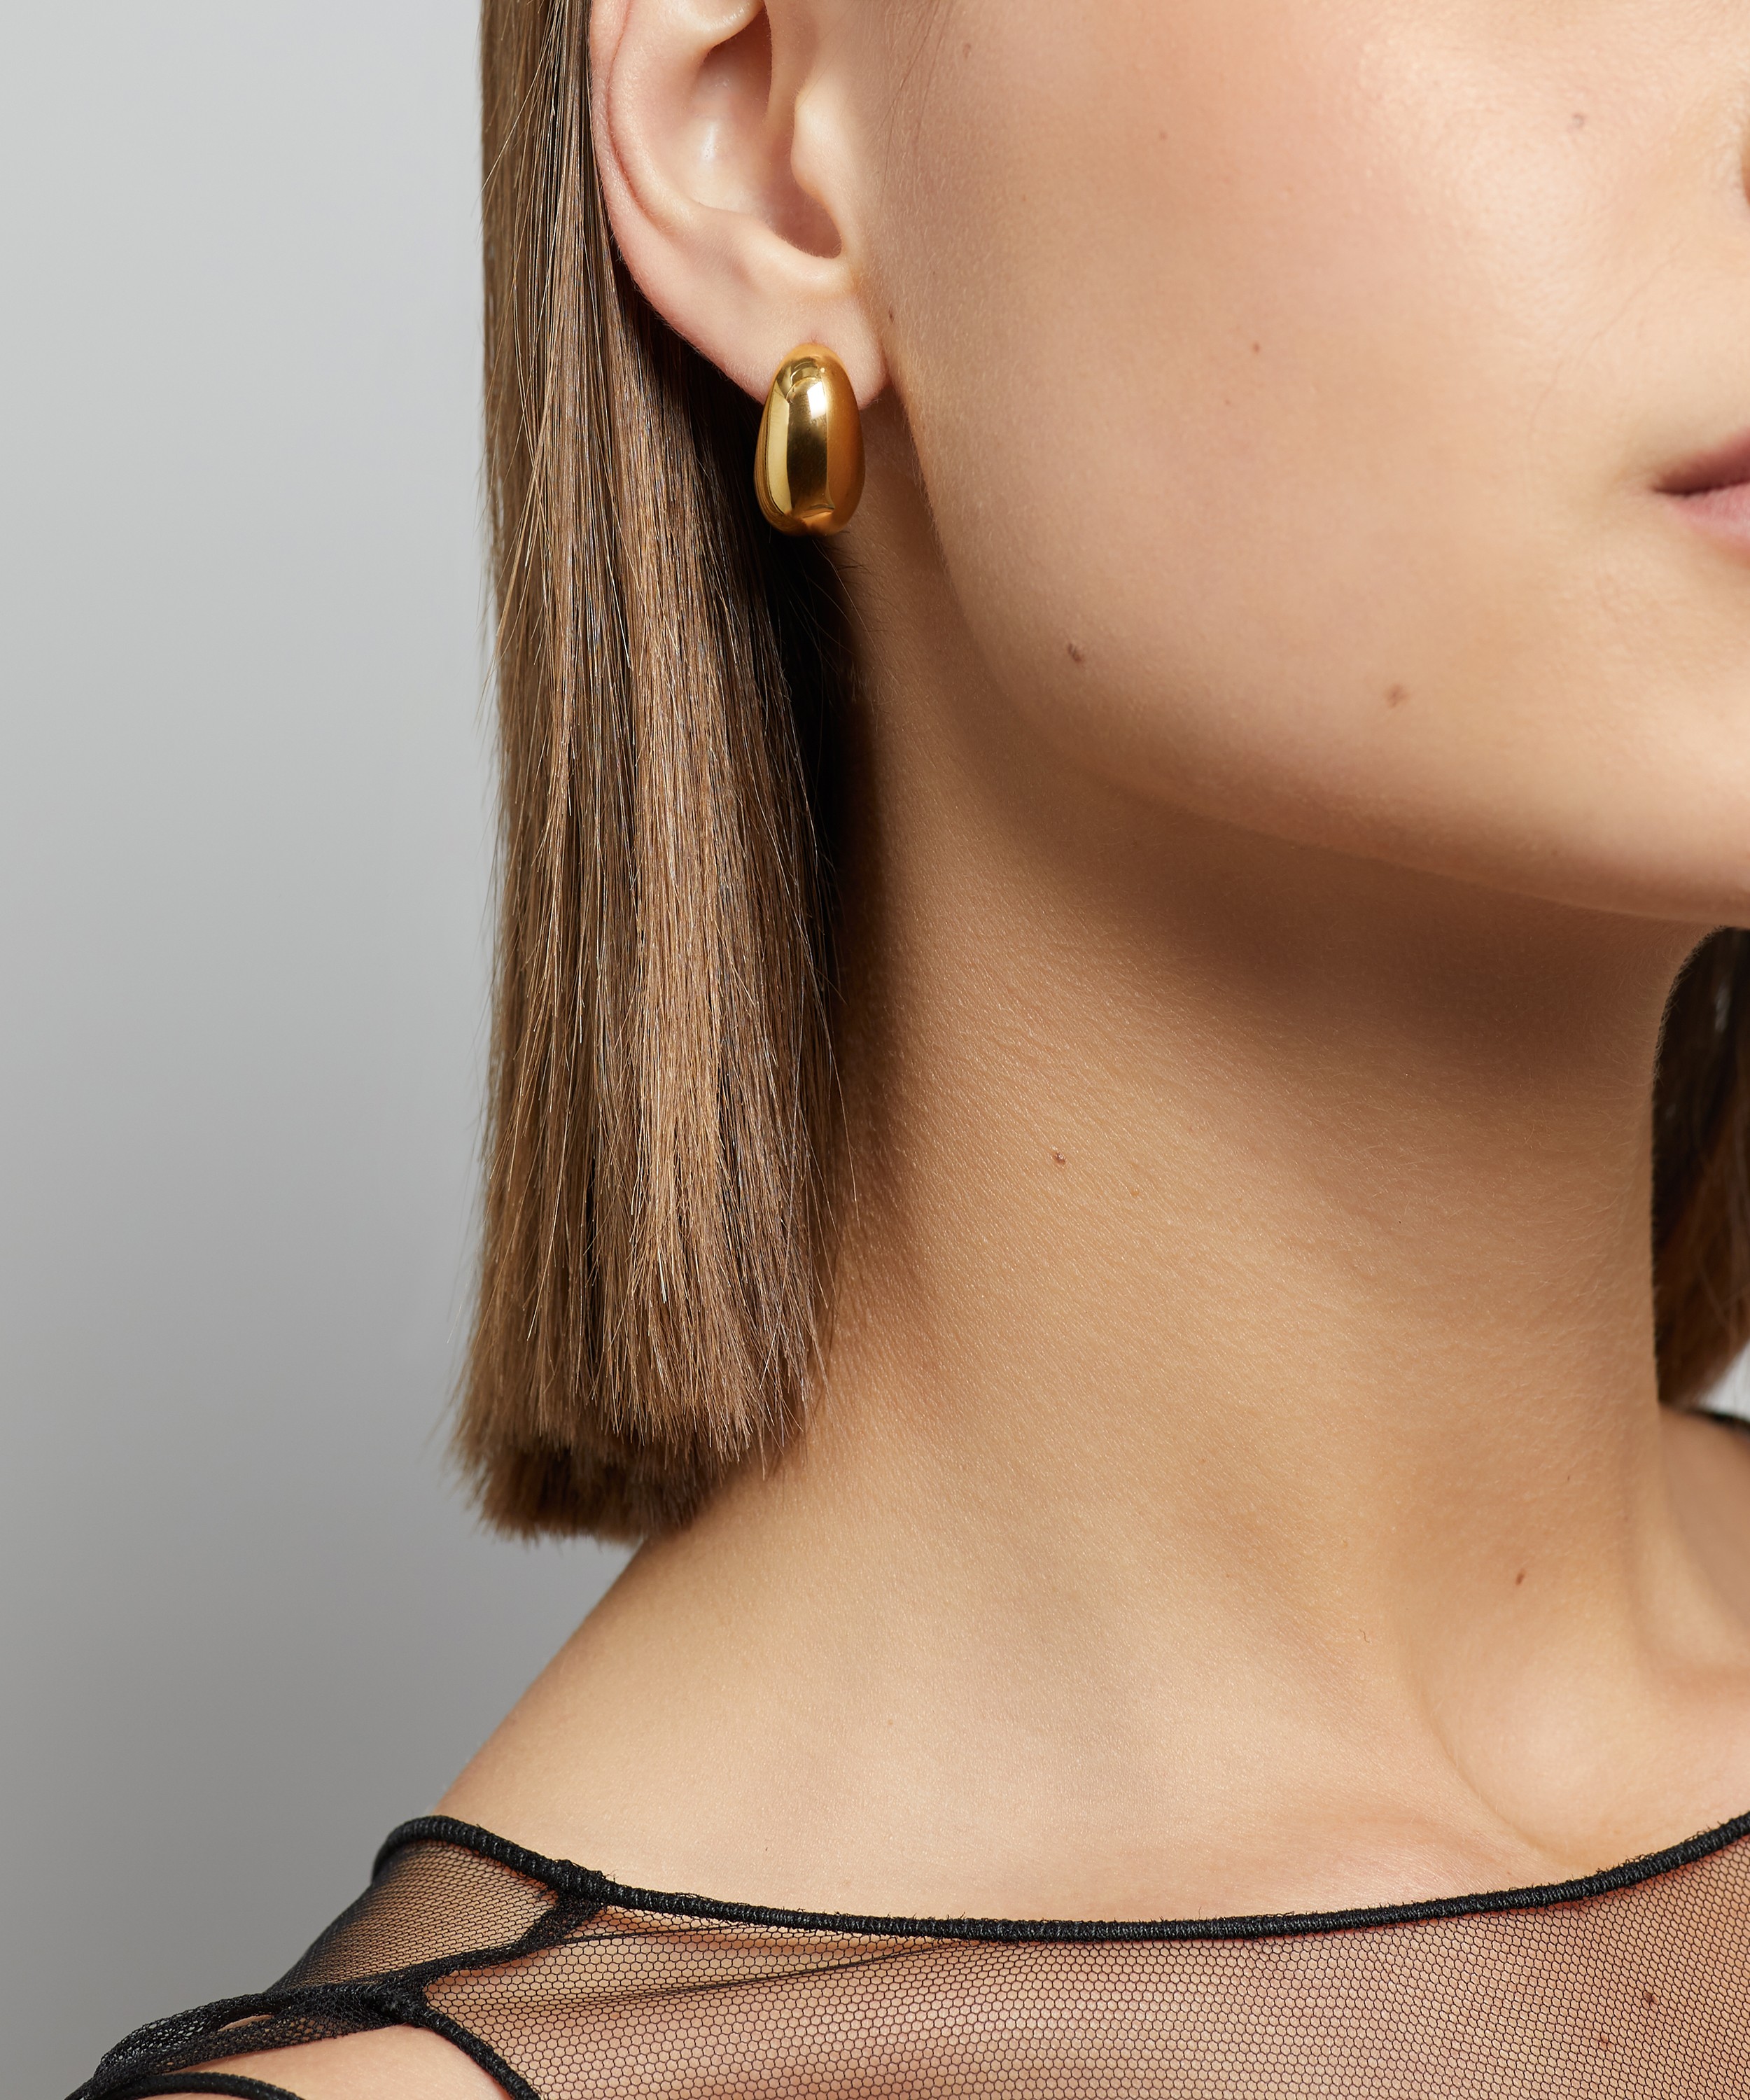 Organic Spine Hoop Medium Earrings in 18ct Gold Vermeil